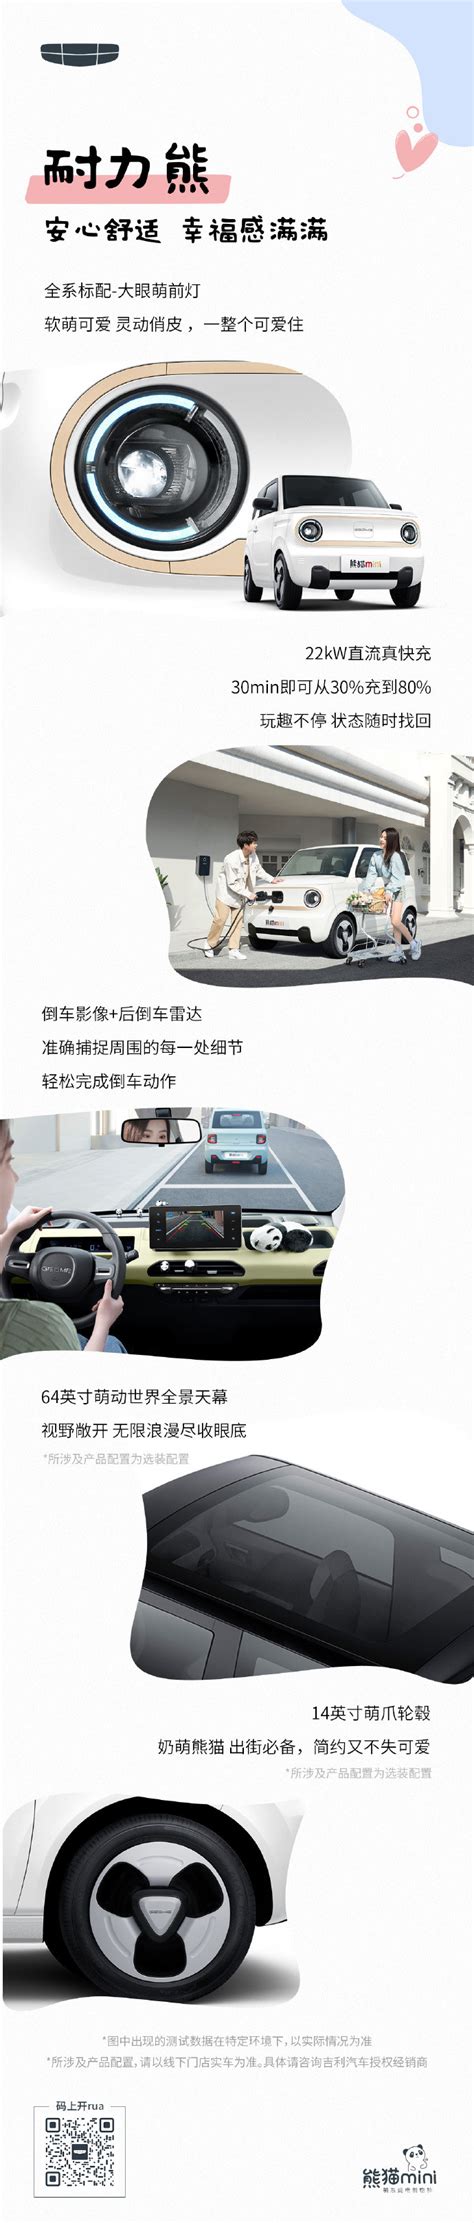 【熊猫熊猫mini 200km 耐力熊驾驶员座椅图片-汽车图片大全】-易车